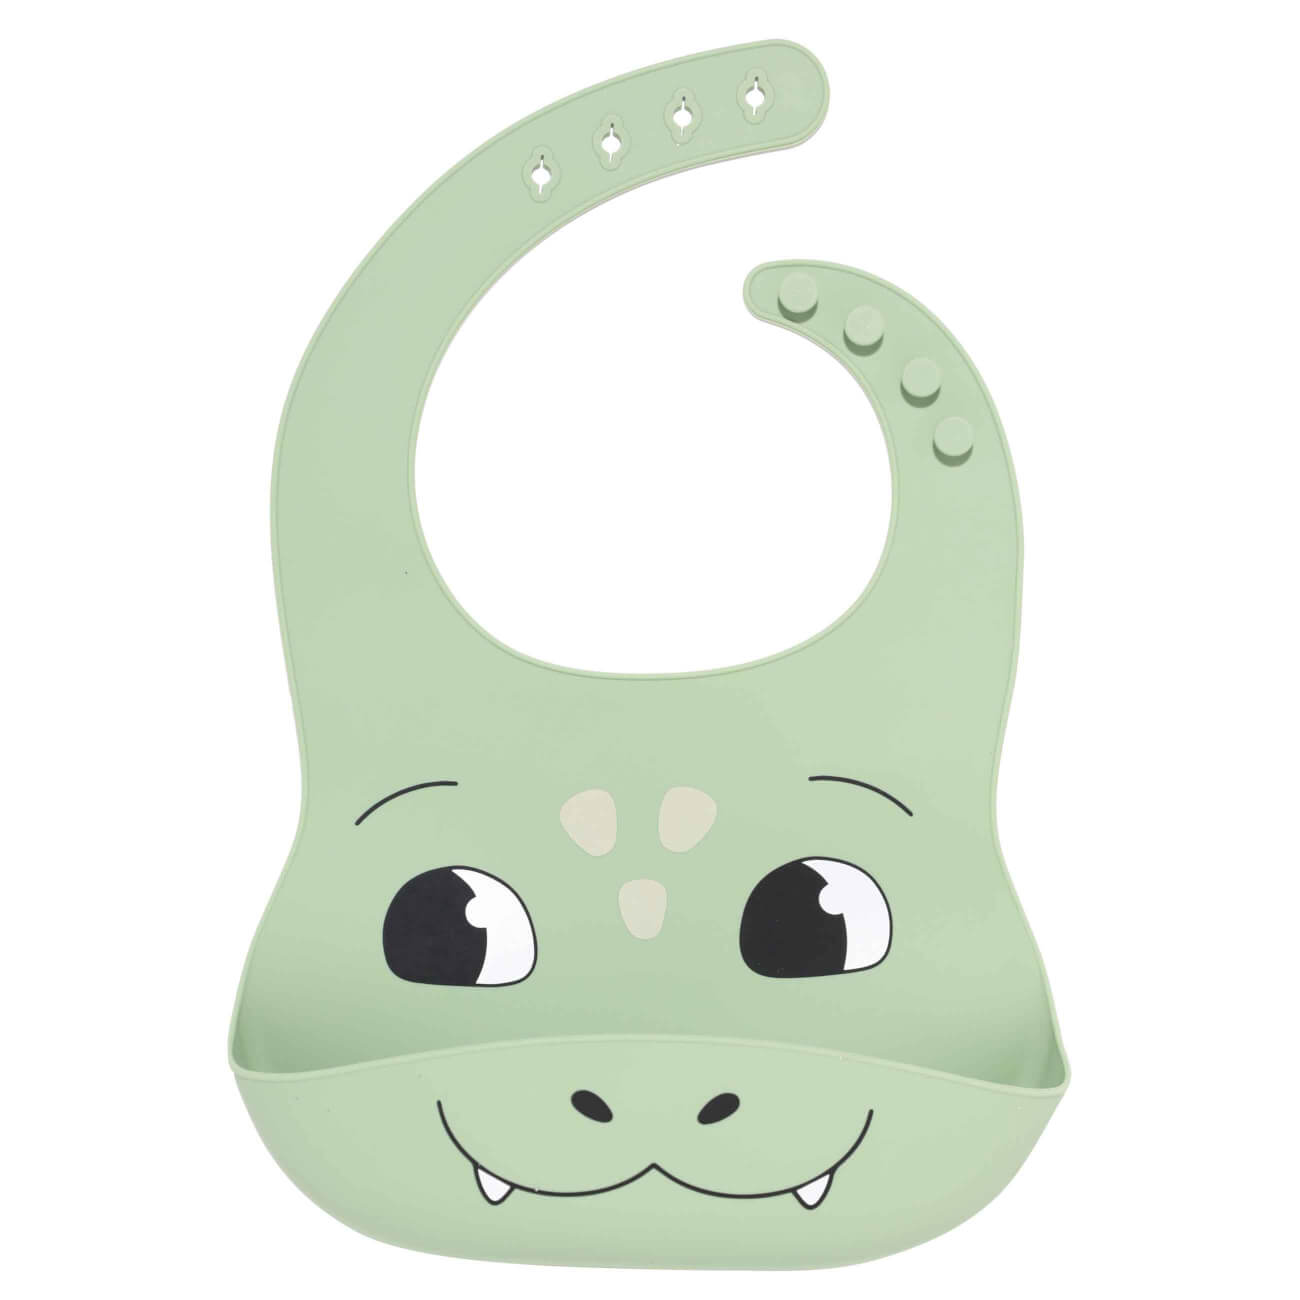 Нагрудник, детский, 30х22 см, с карманом, силикон, зеленый, Дракоша, Kiddy dragon игрушка прорезыватель 10 см силикон зеленый дракоша kiddy dragon